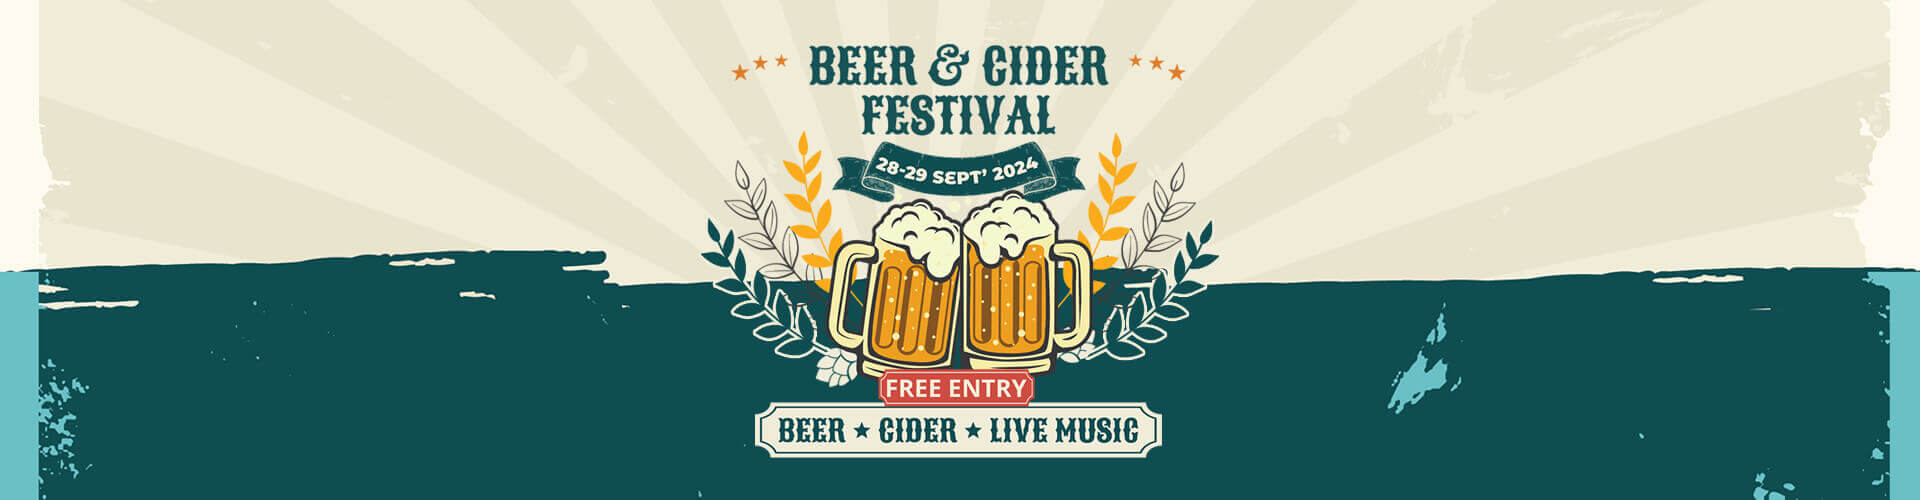 Beer & Cider Festival